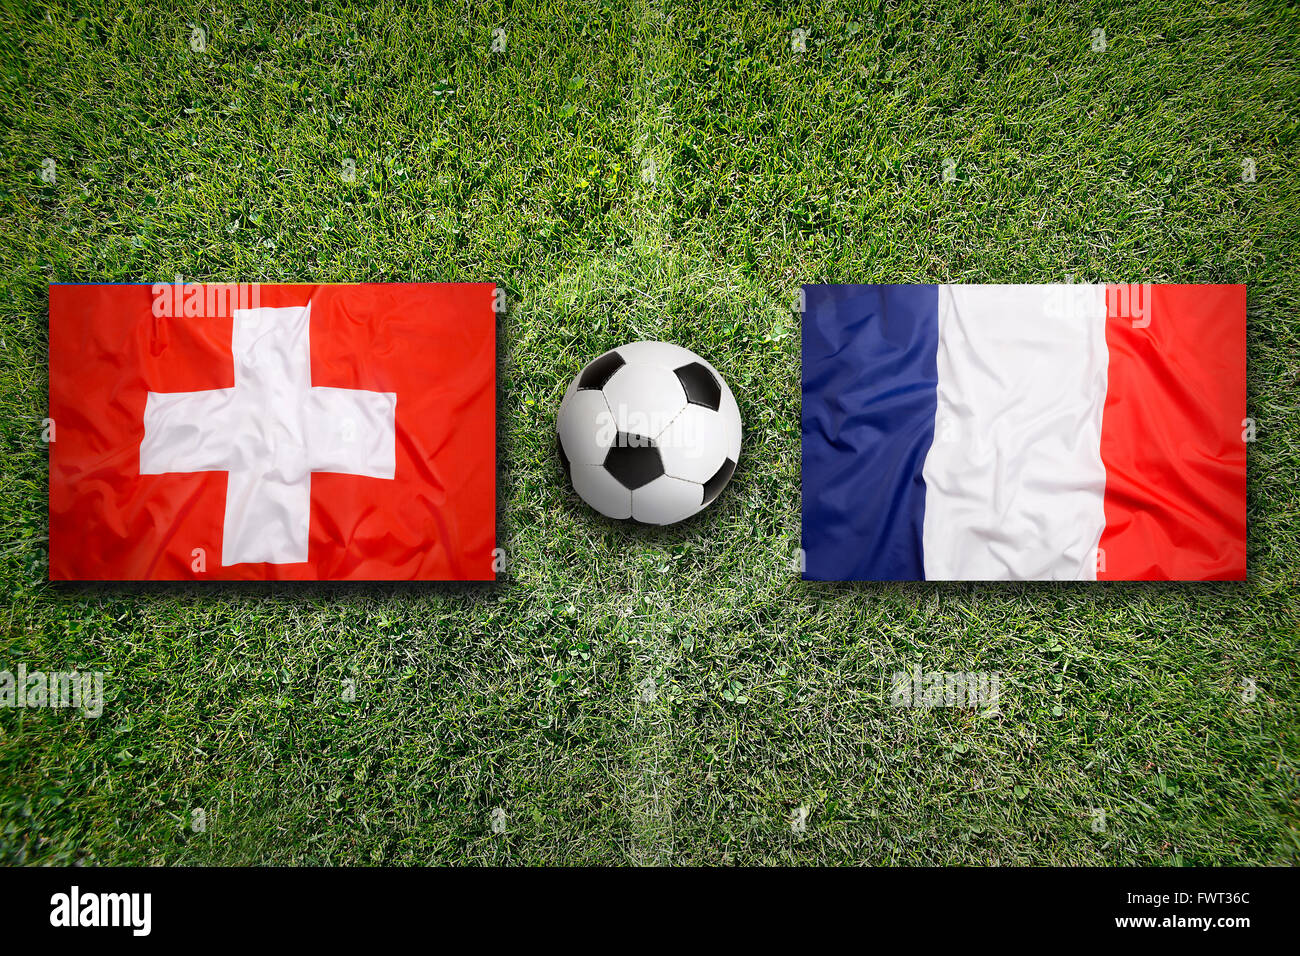 Suisse vs France Les drapeaux sur le terrain de soccer vert Banque D'Images